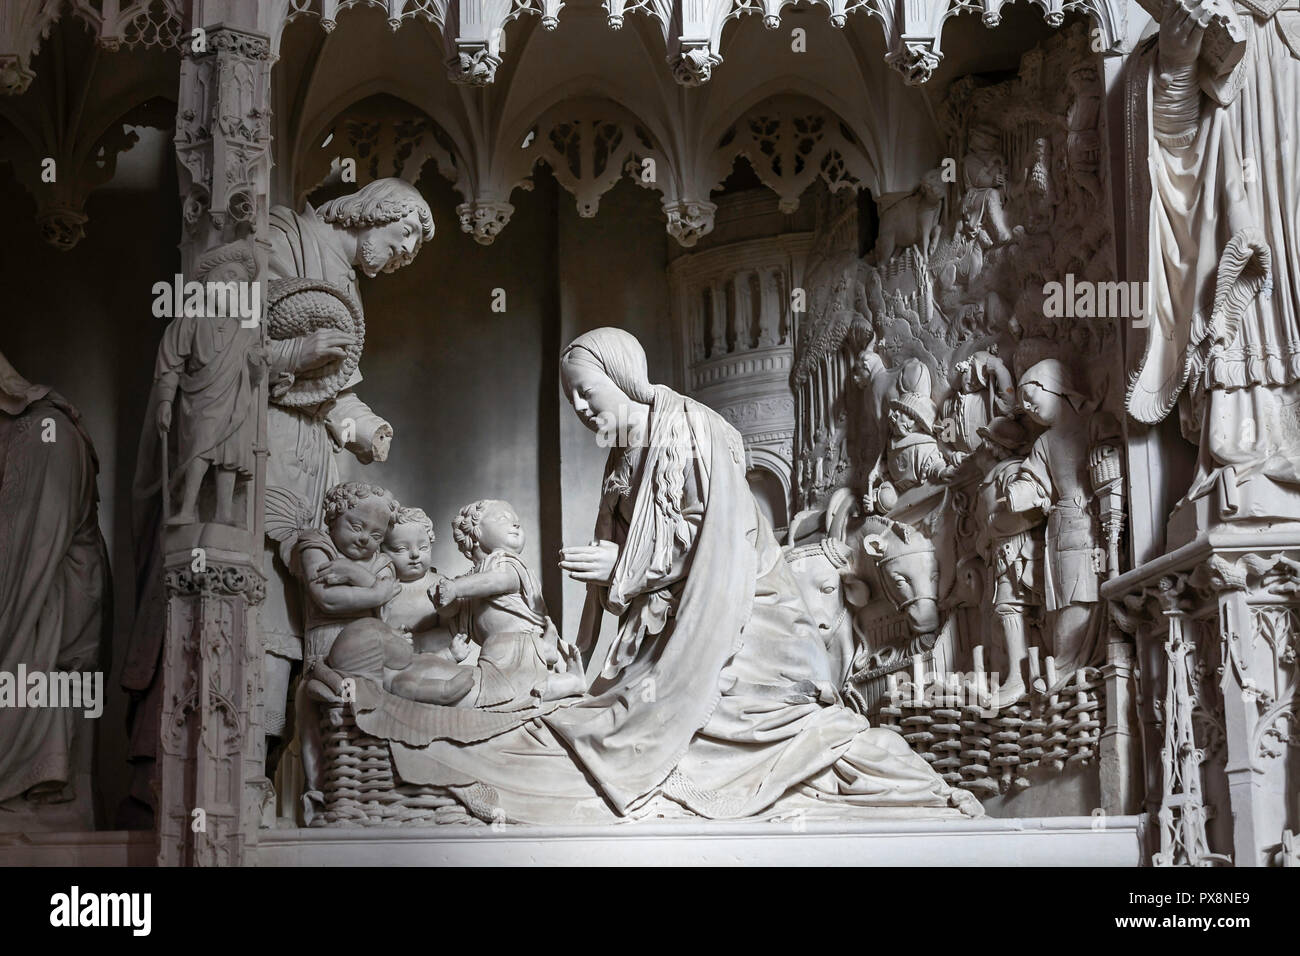 Les figures sculptées de la vie du Christ, de l'intérieur de la cathédrale de Notre Dame, France Banque D'Images